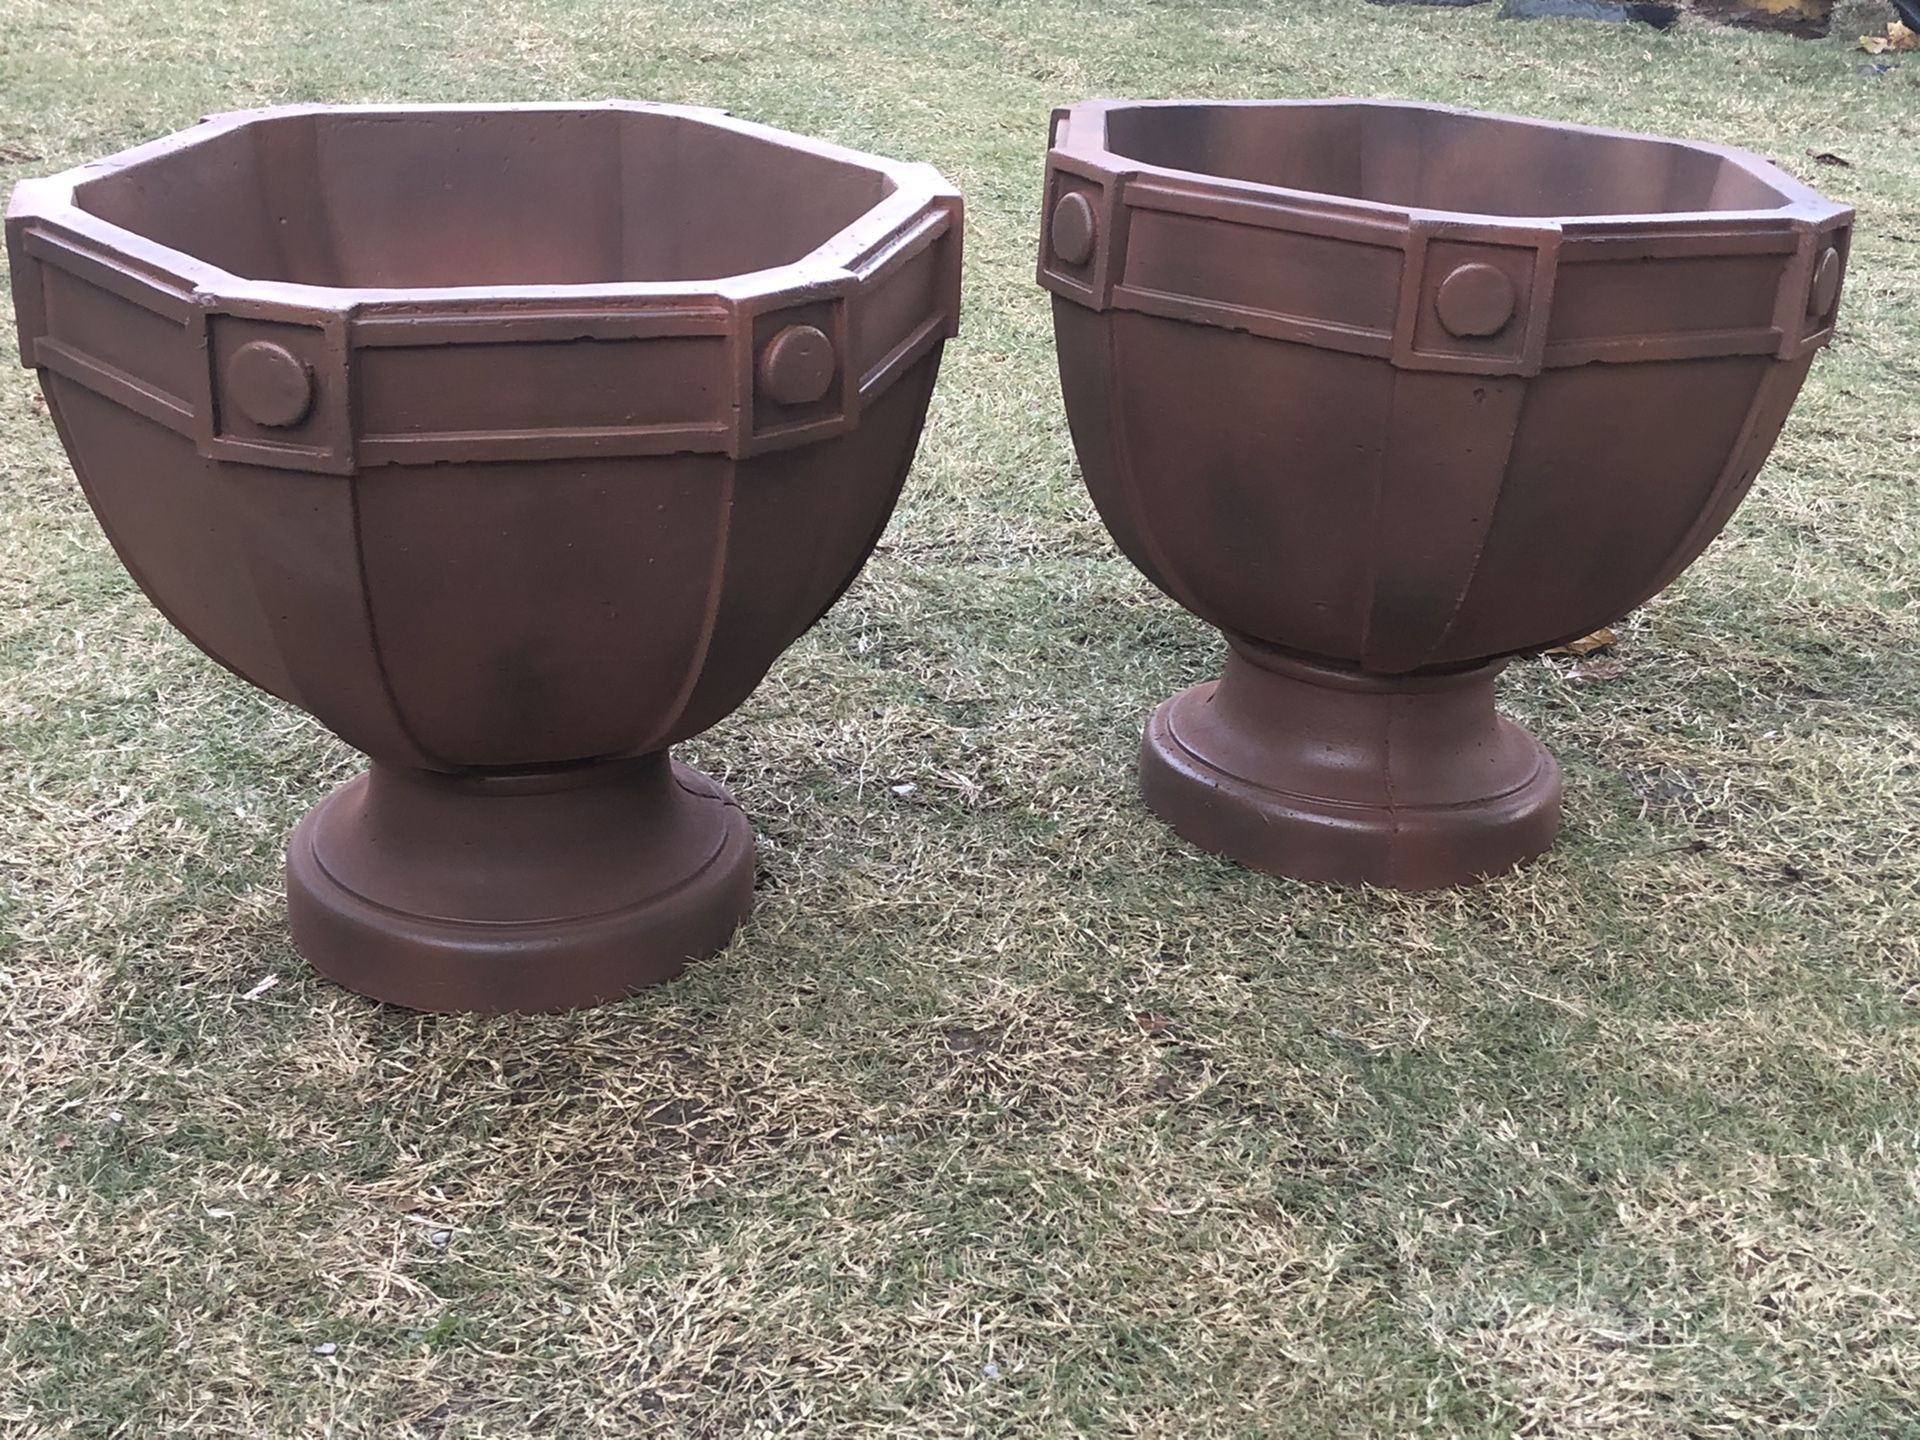 Two Flower pots!